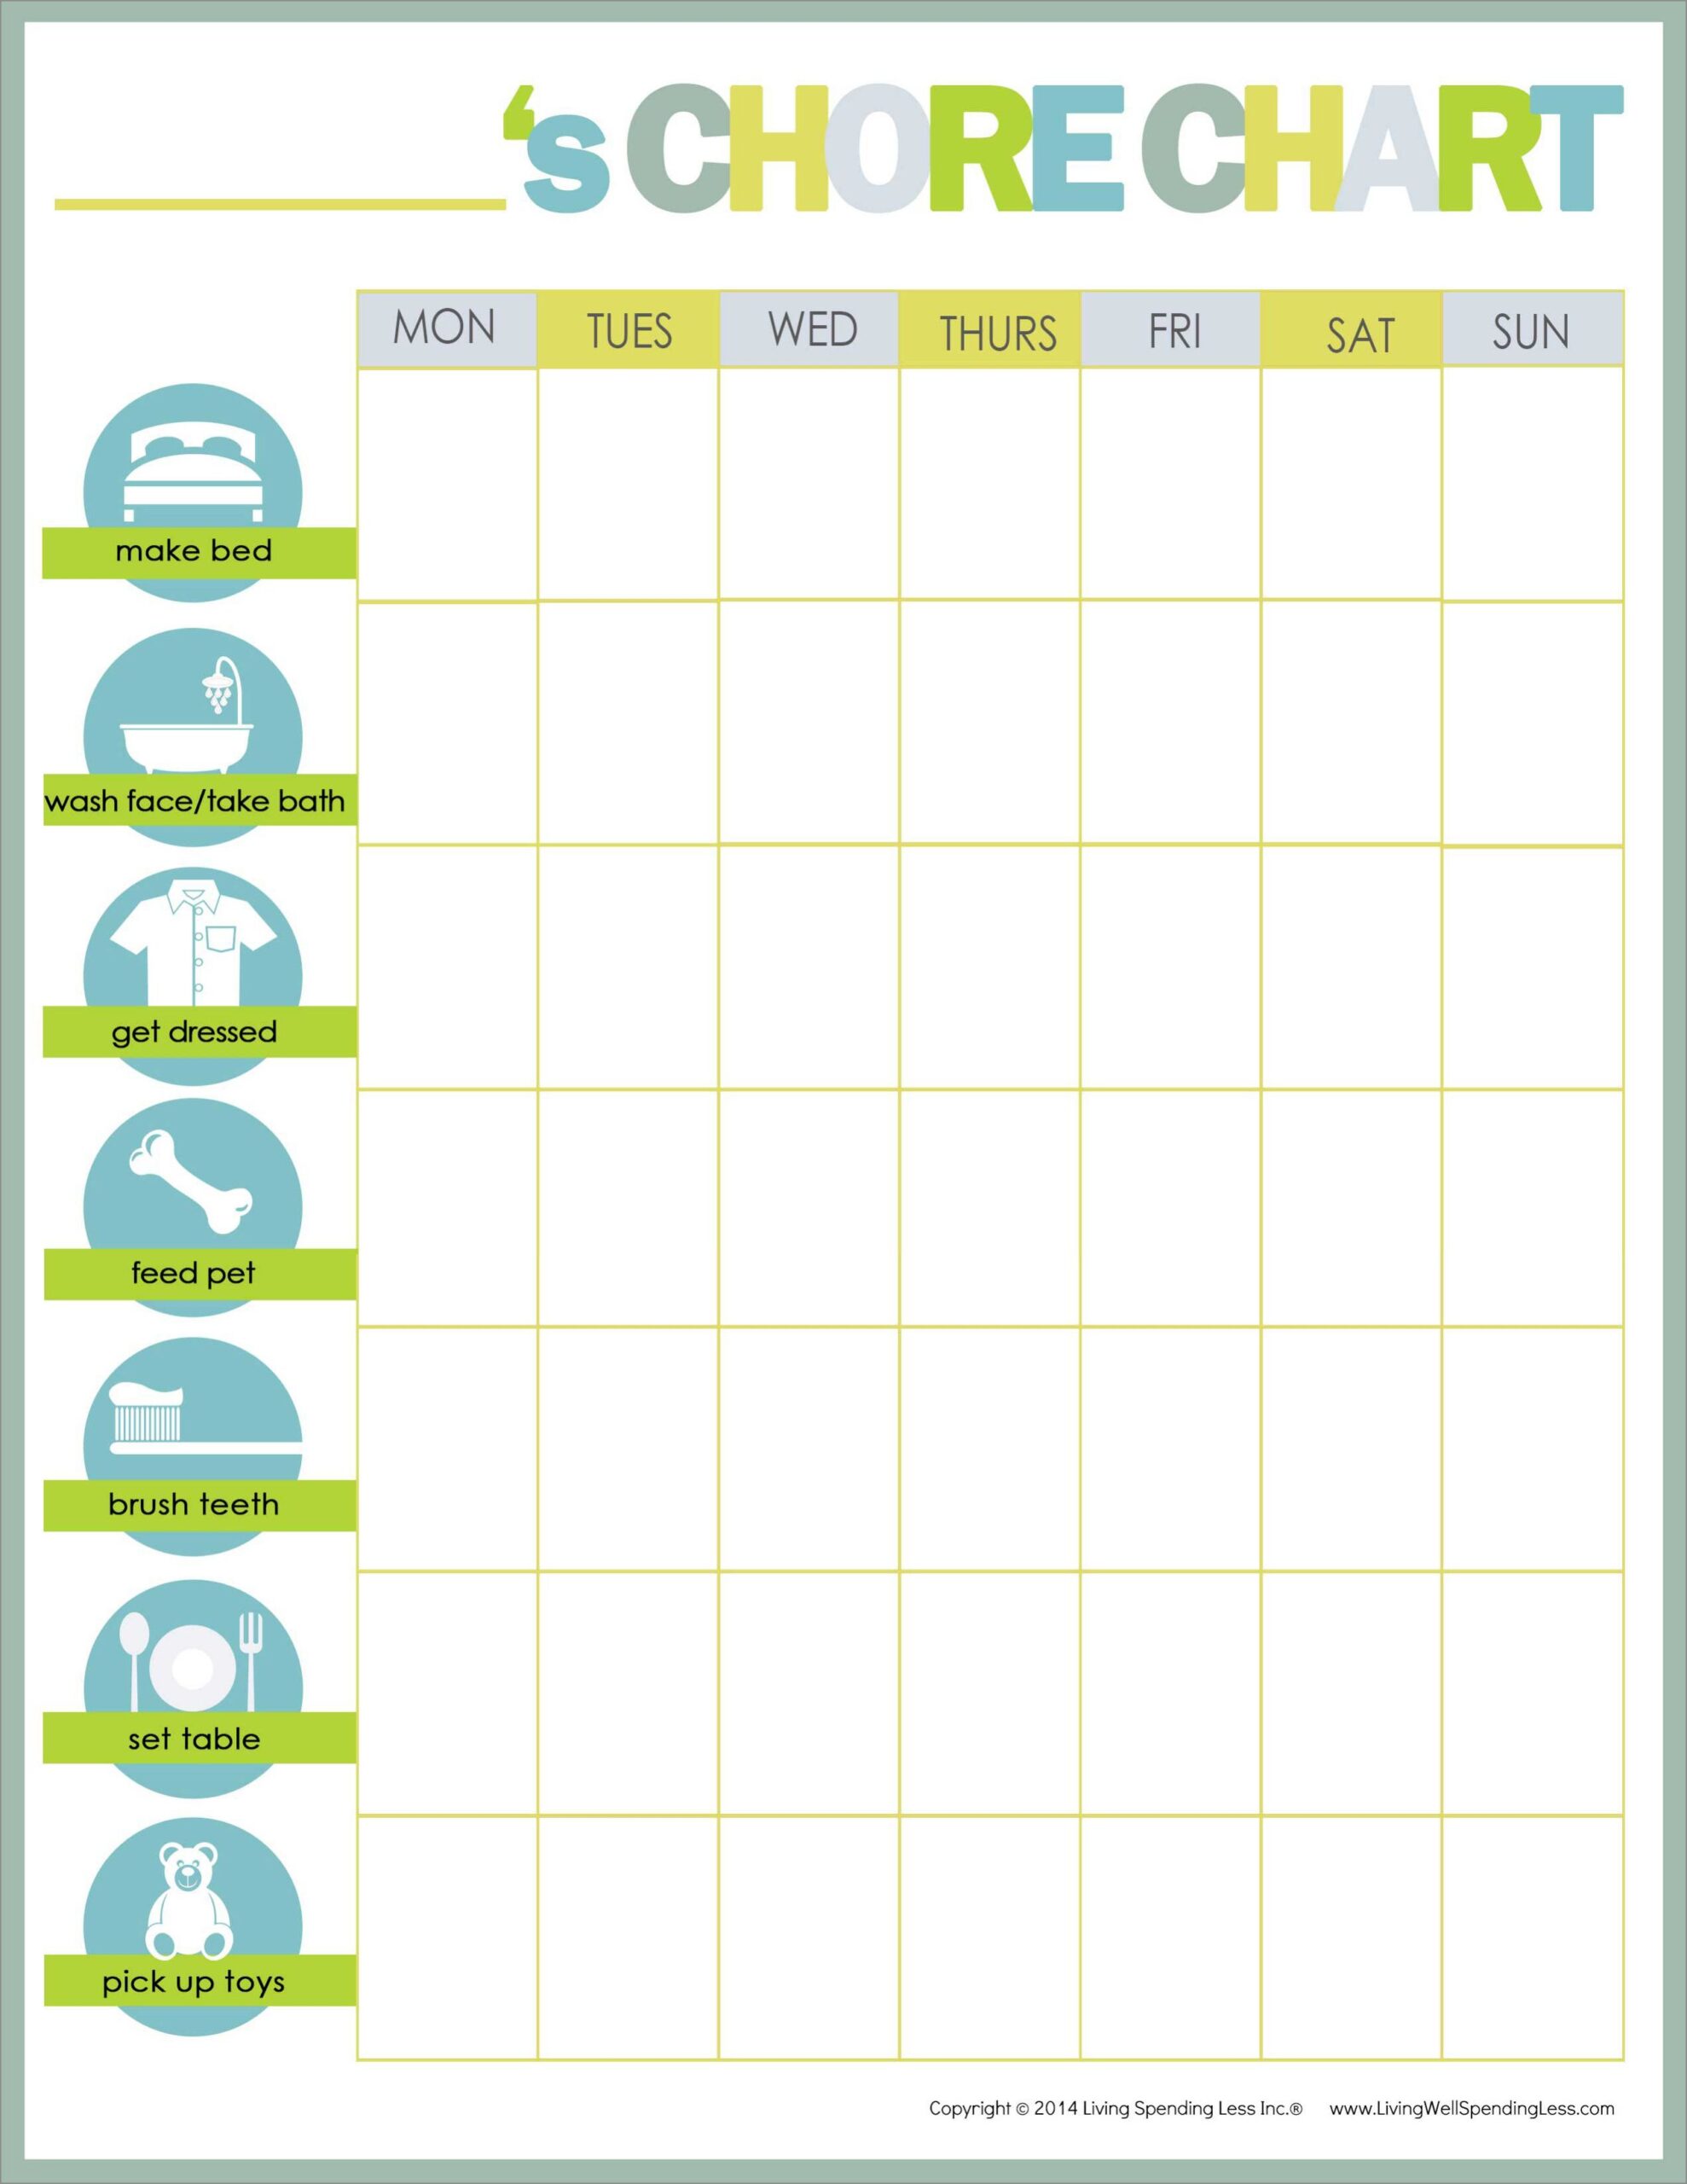 chore schedule template